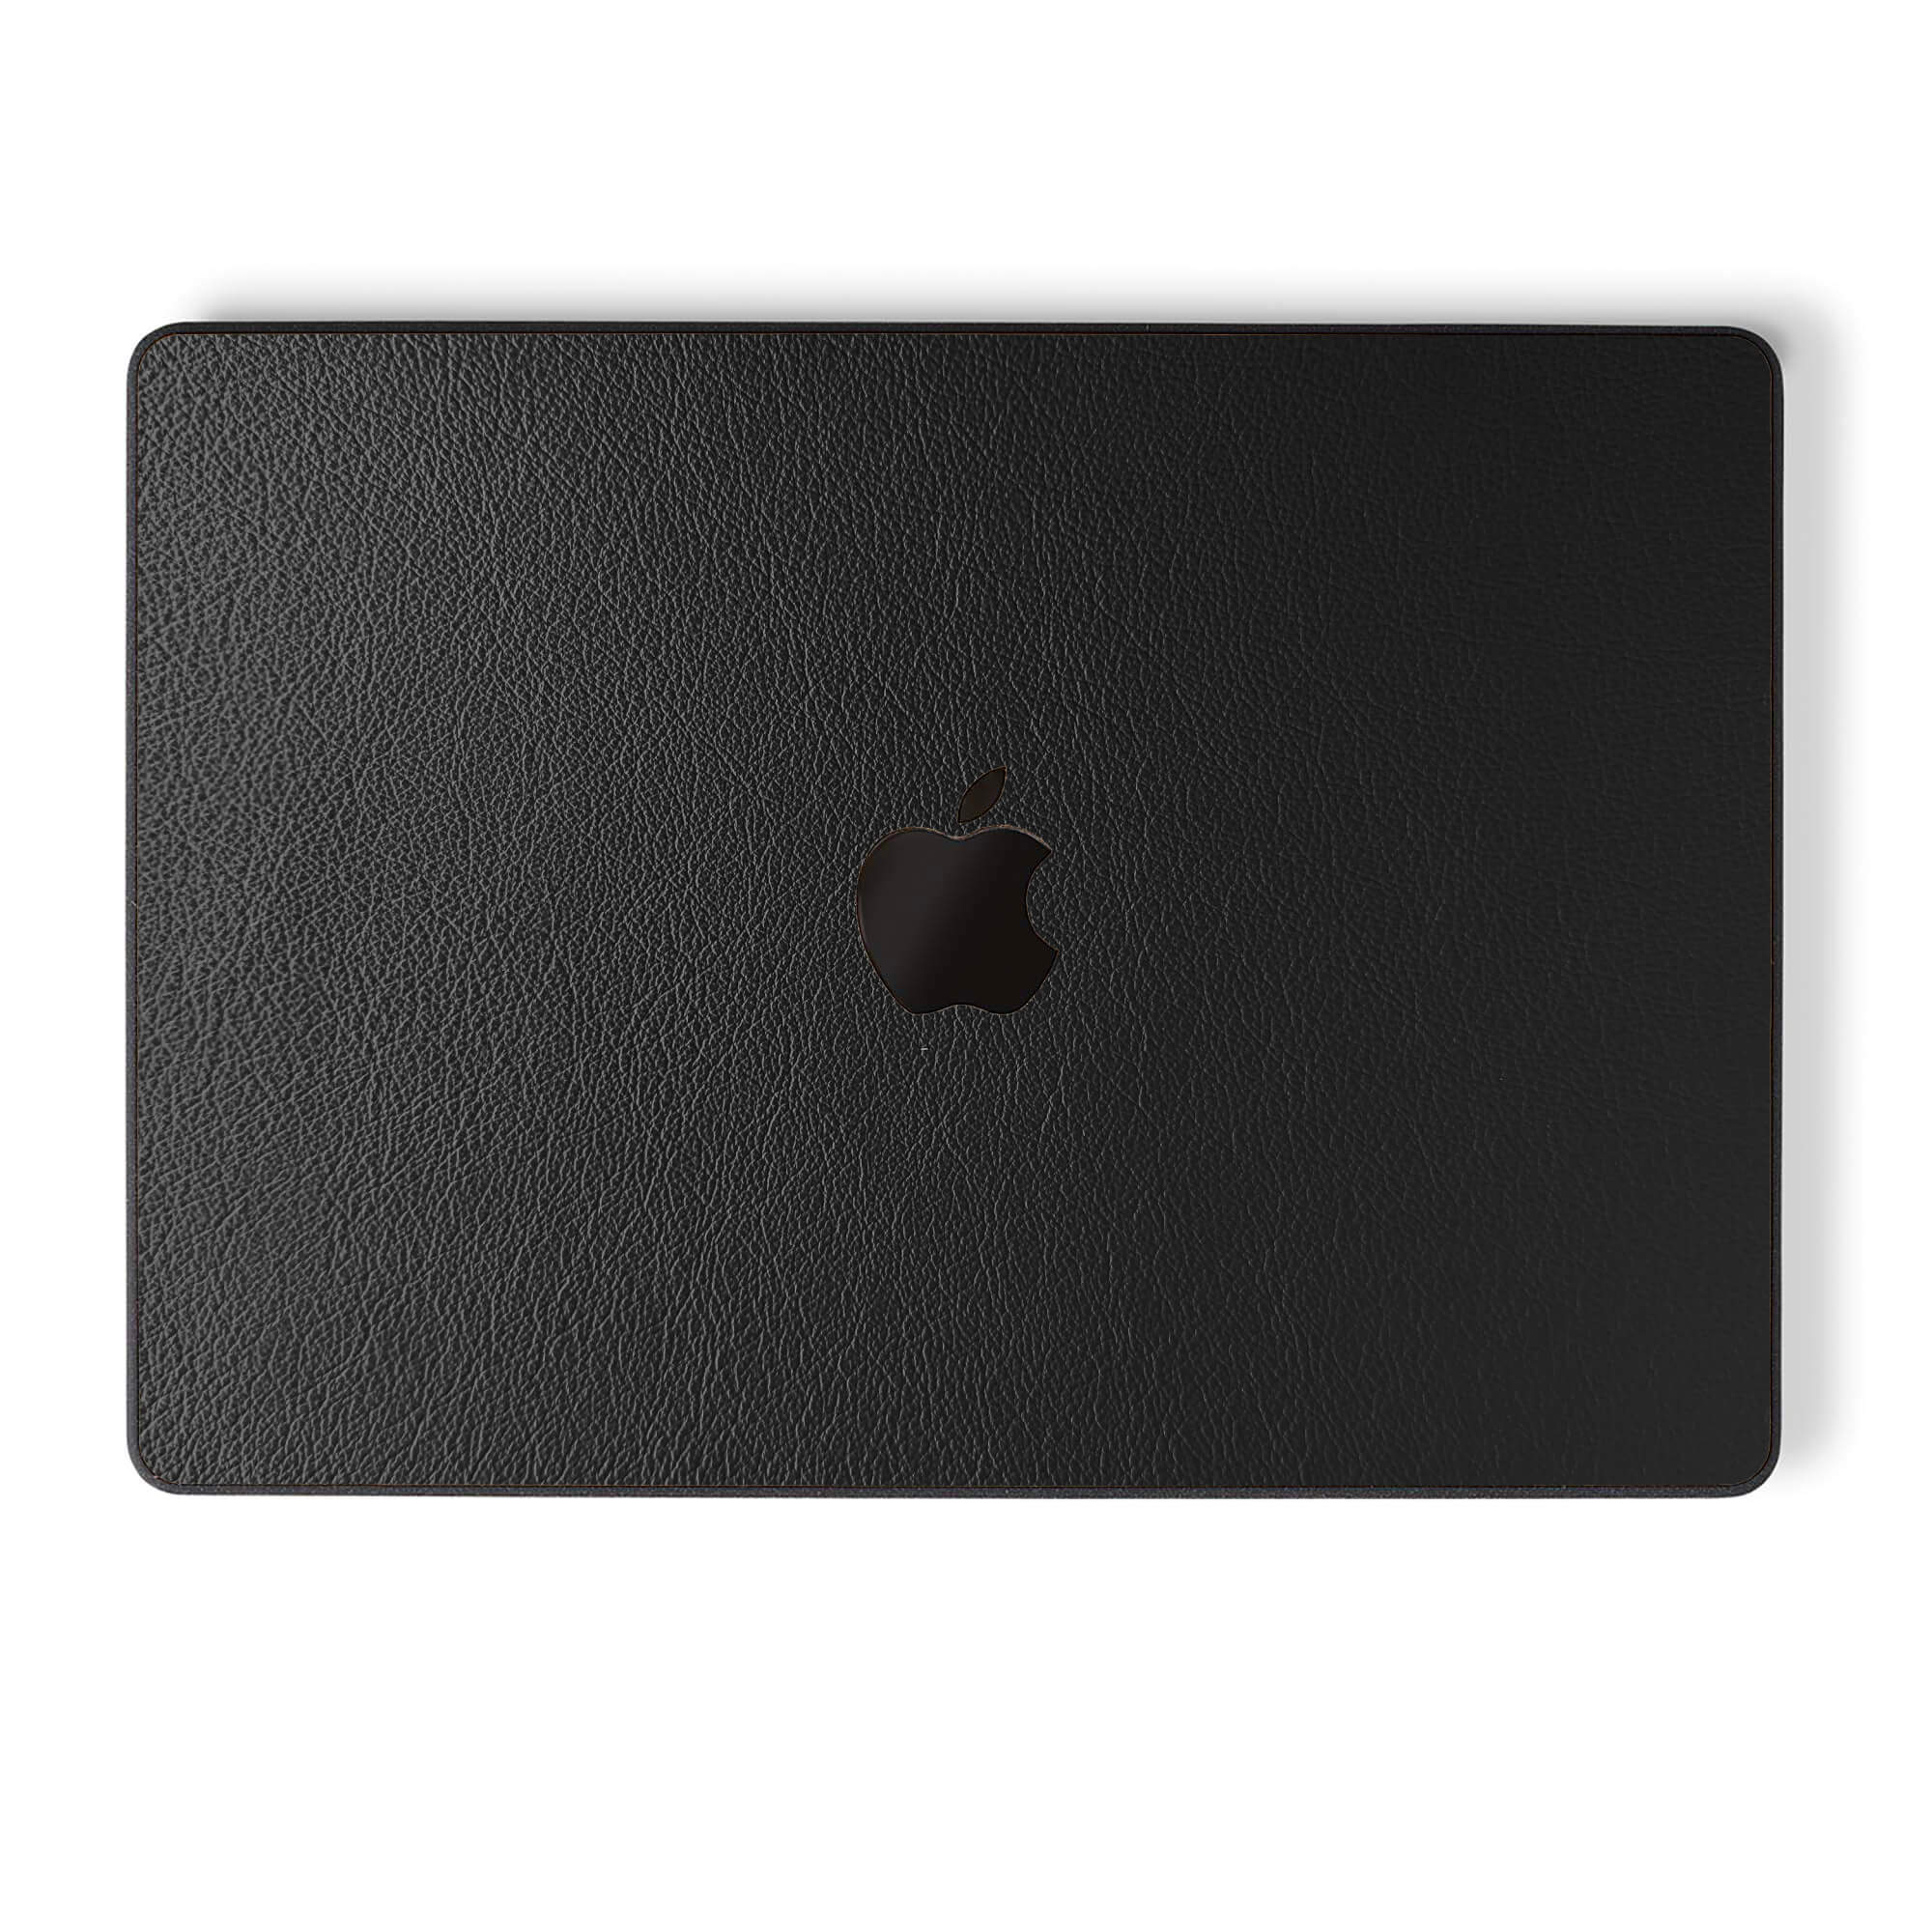 alt:Leather MacBook Case | var:black |